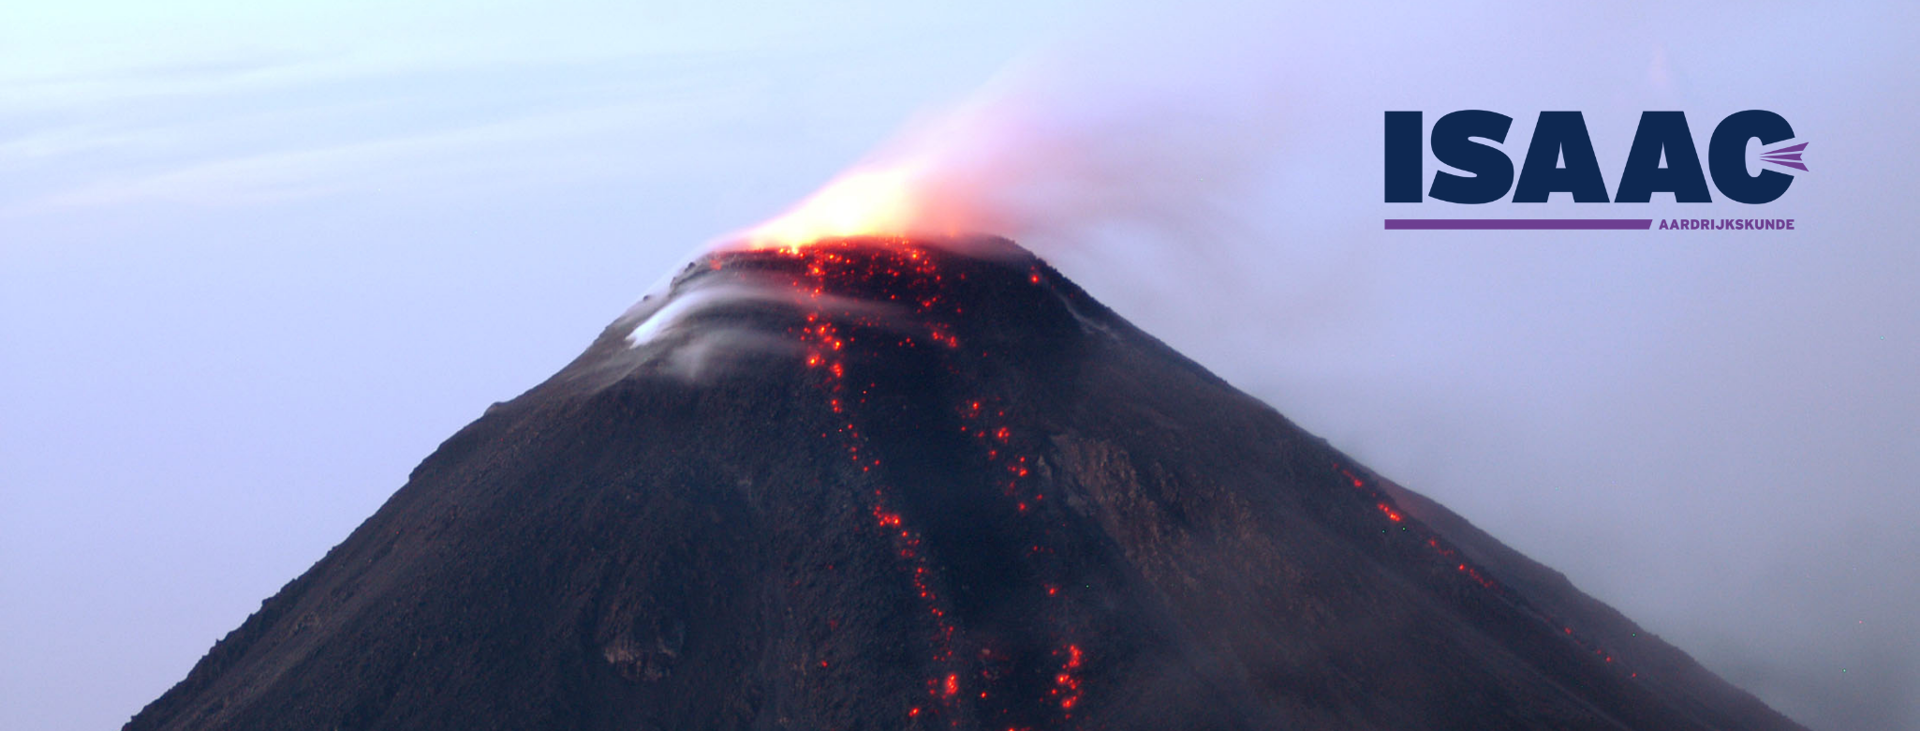 Isaac-aardrijkskunde | Vulkanen